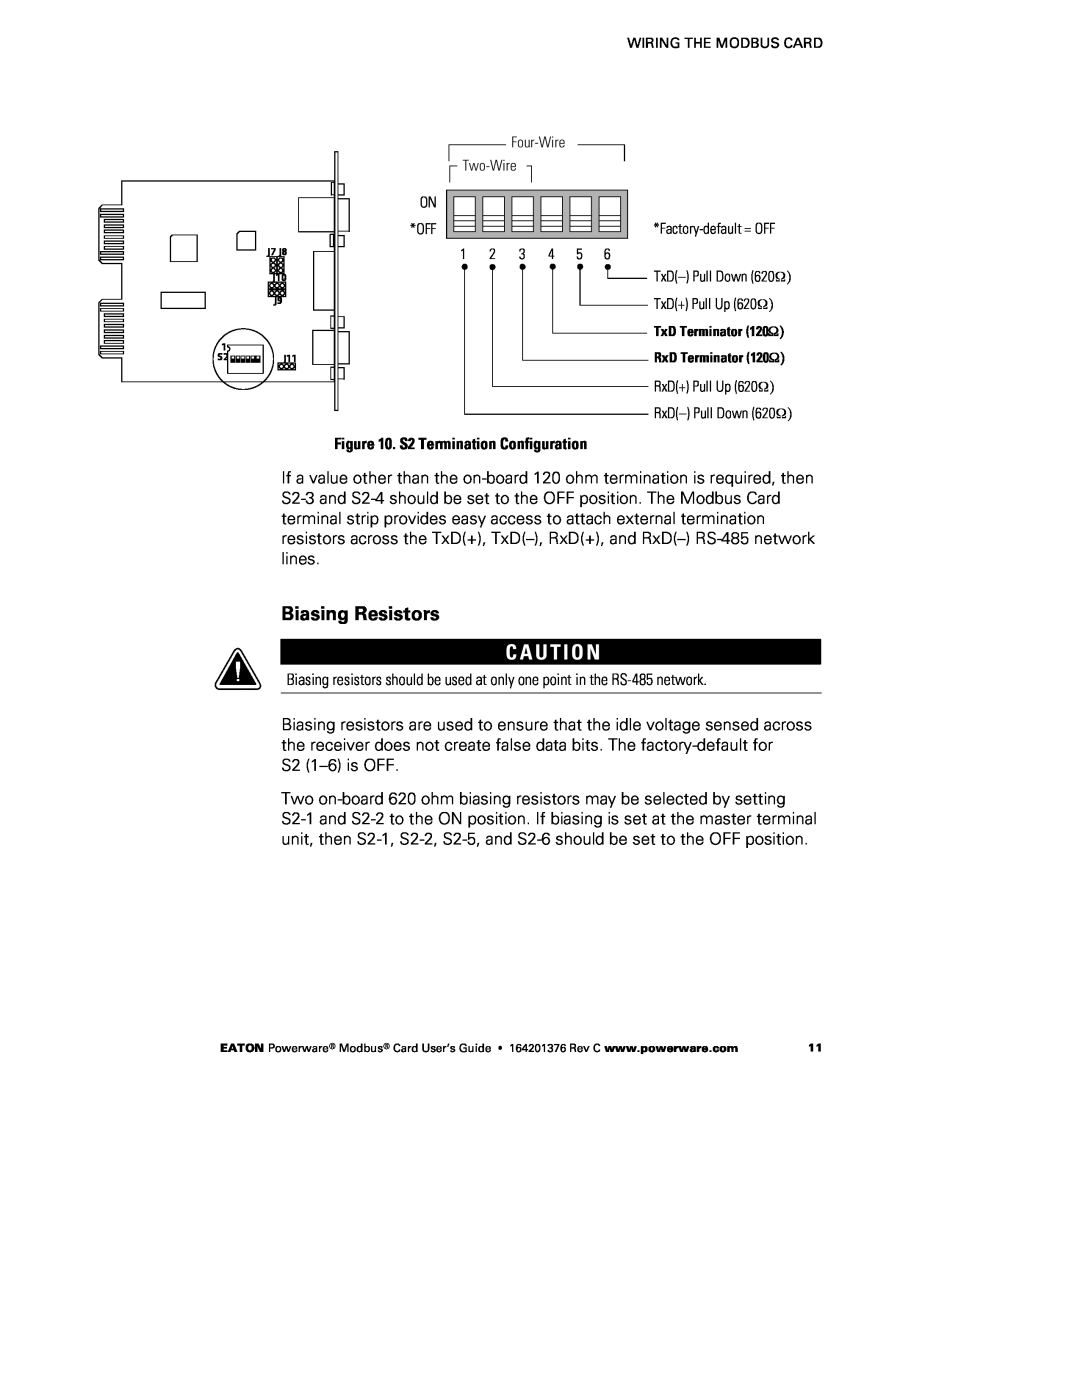 Powerware FCC 15 manual C A U T I O N, Biasing Resistors 